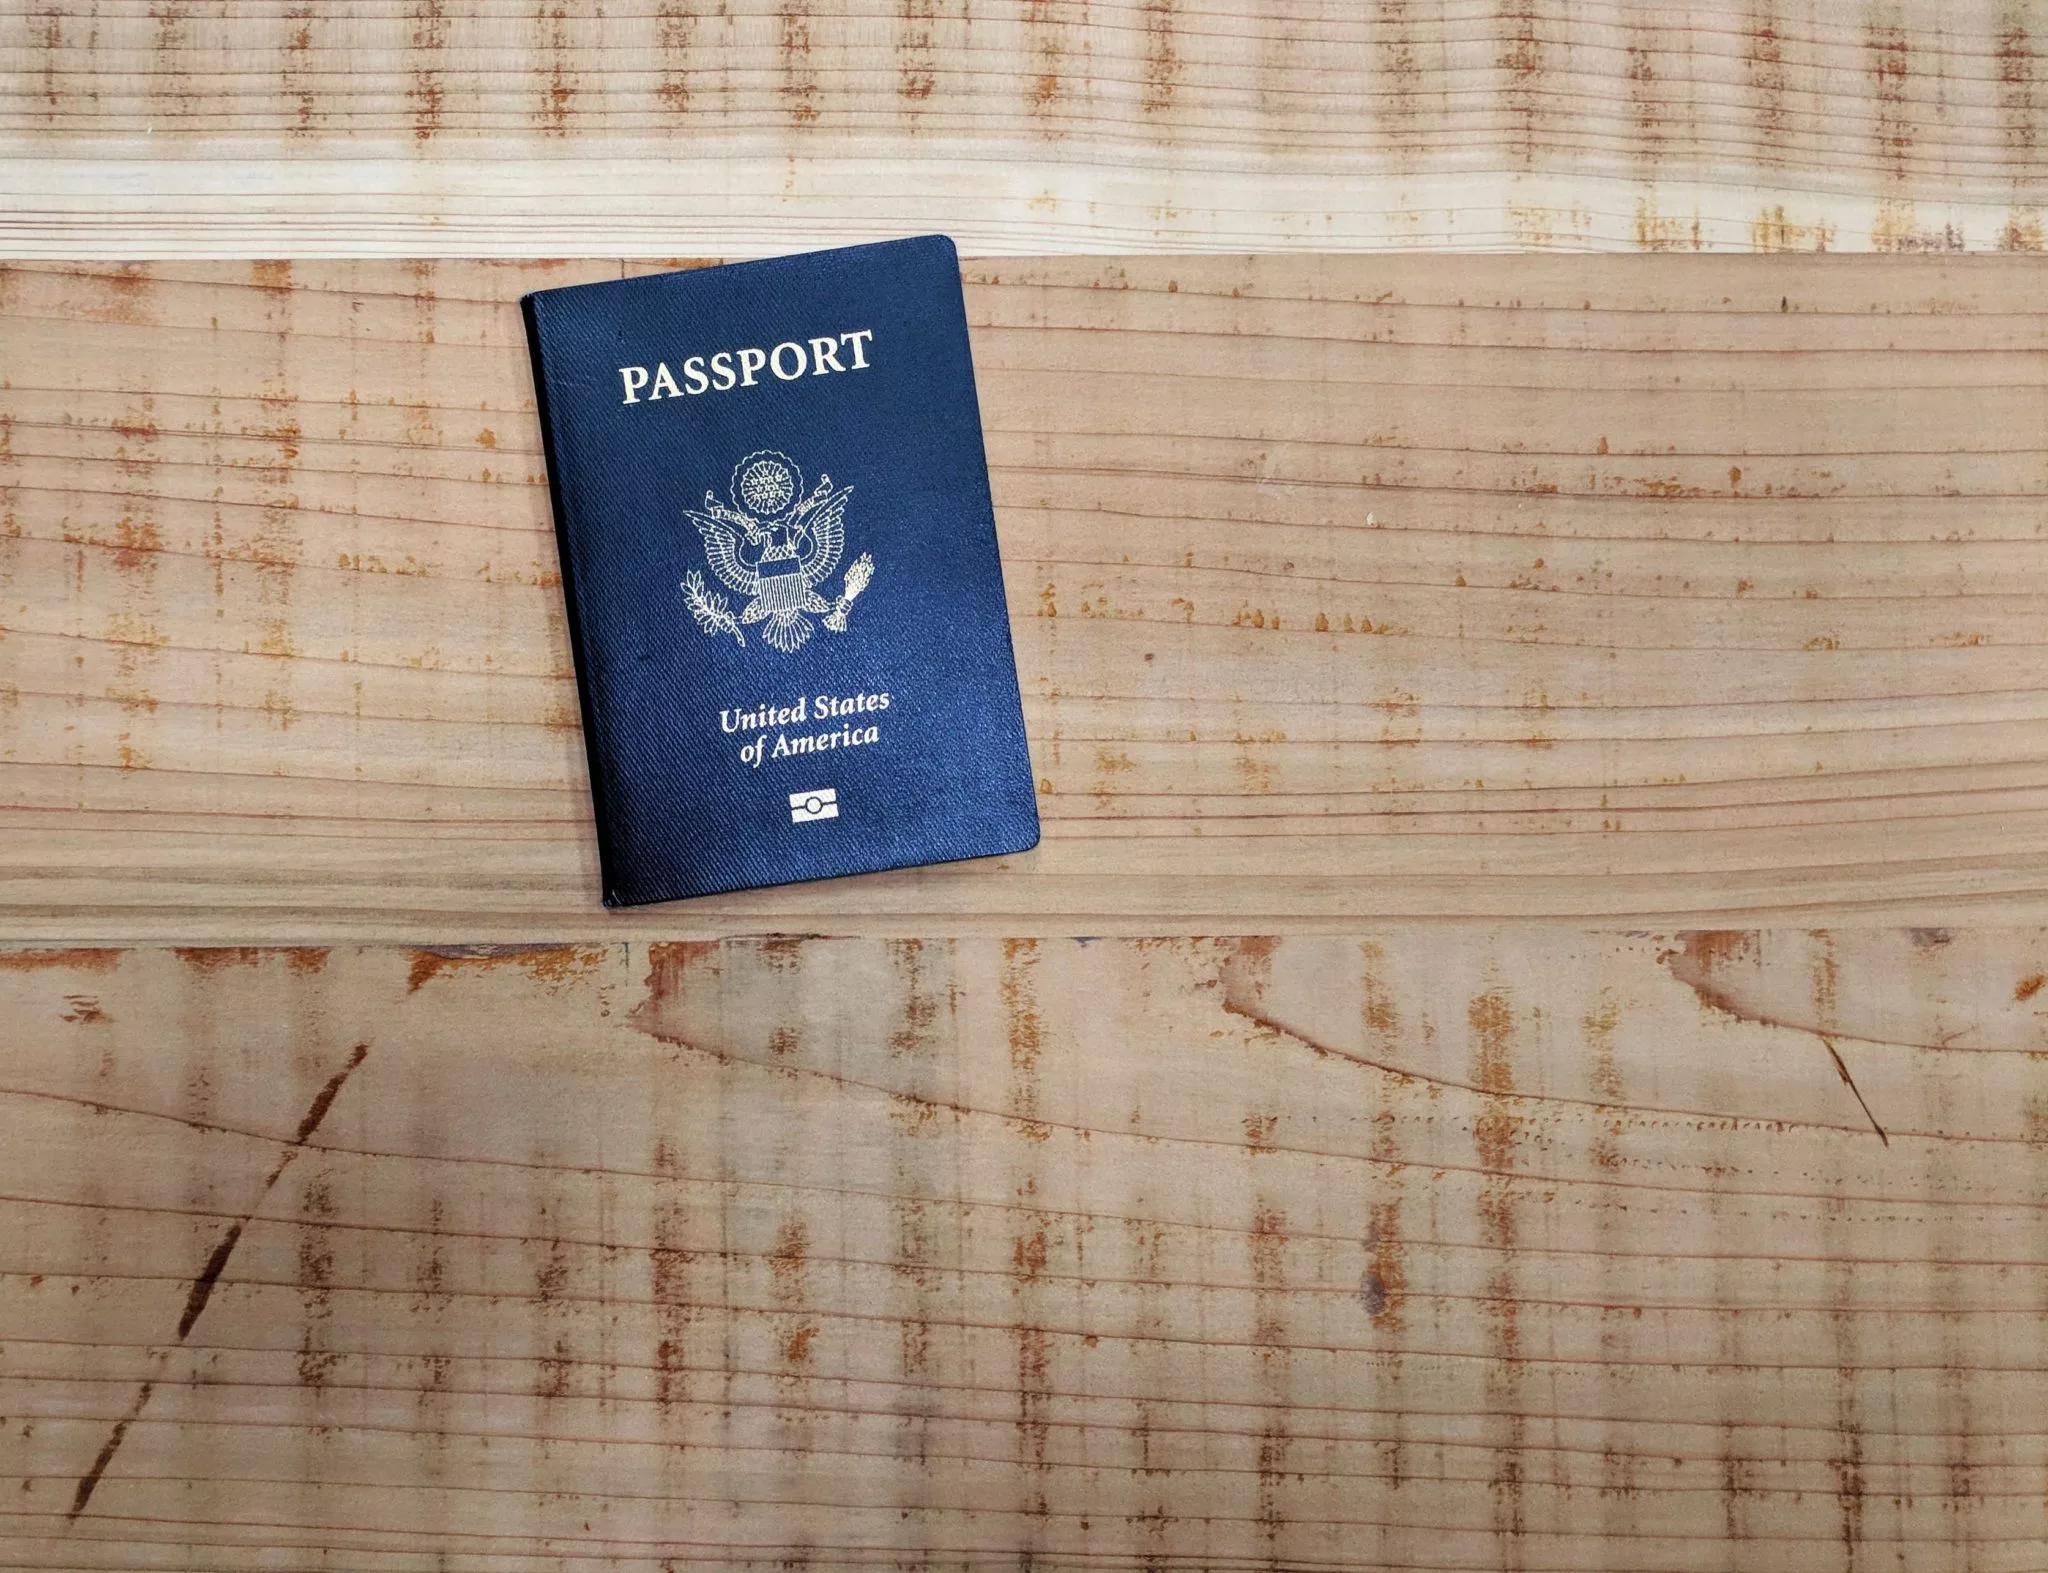 US Passport on wooden table